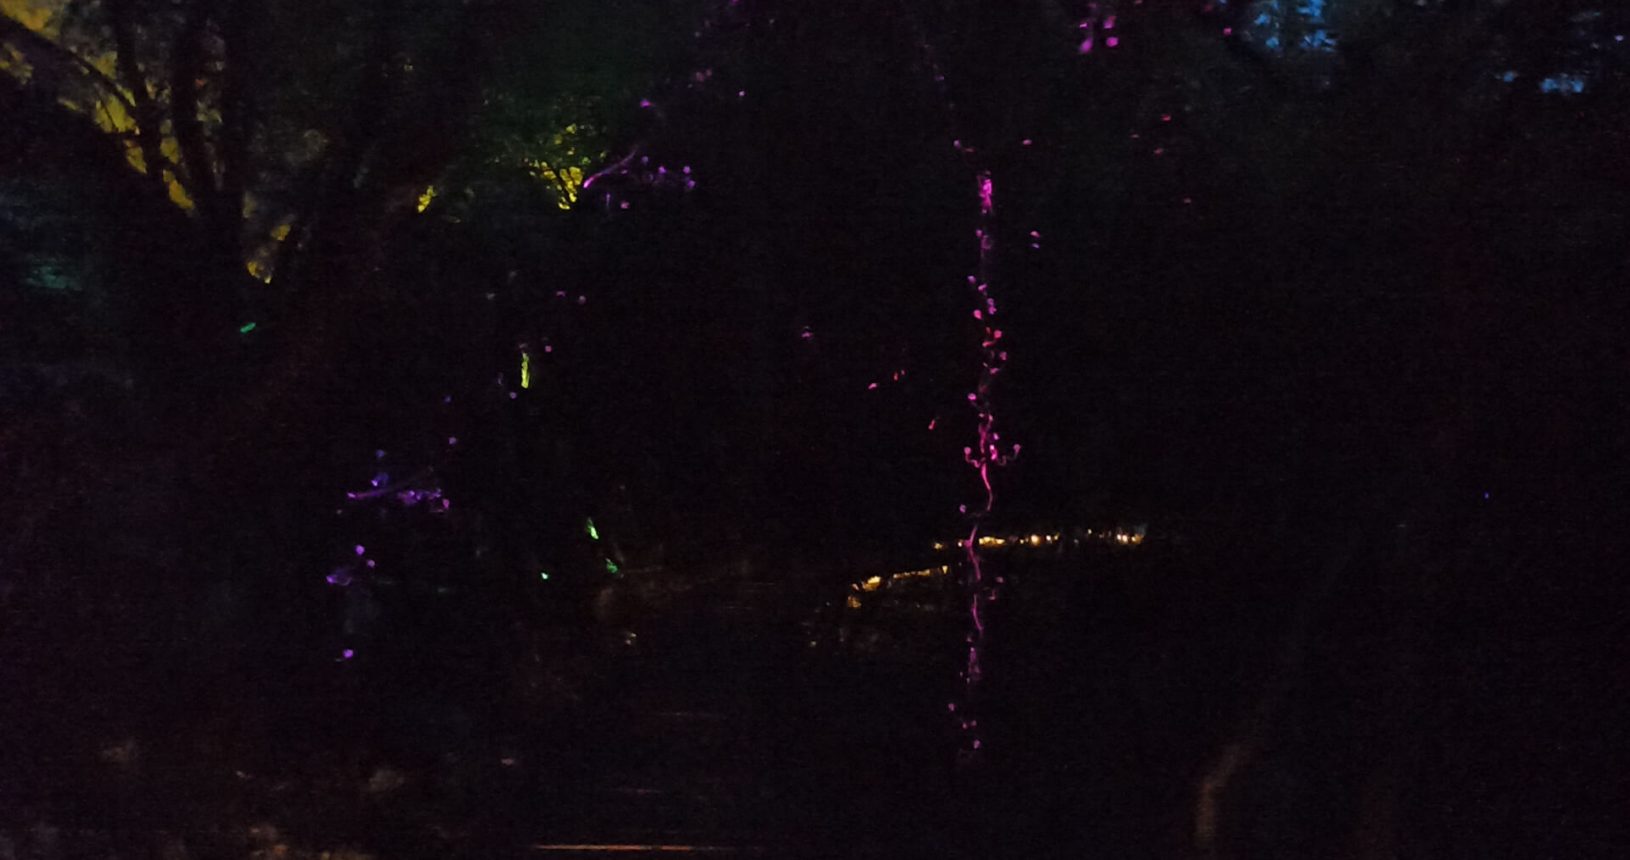 Lights in the dark lightland park